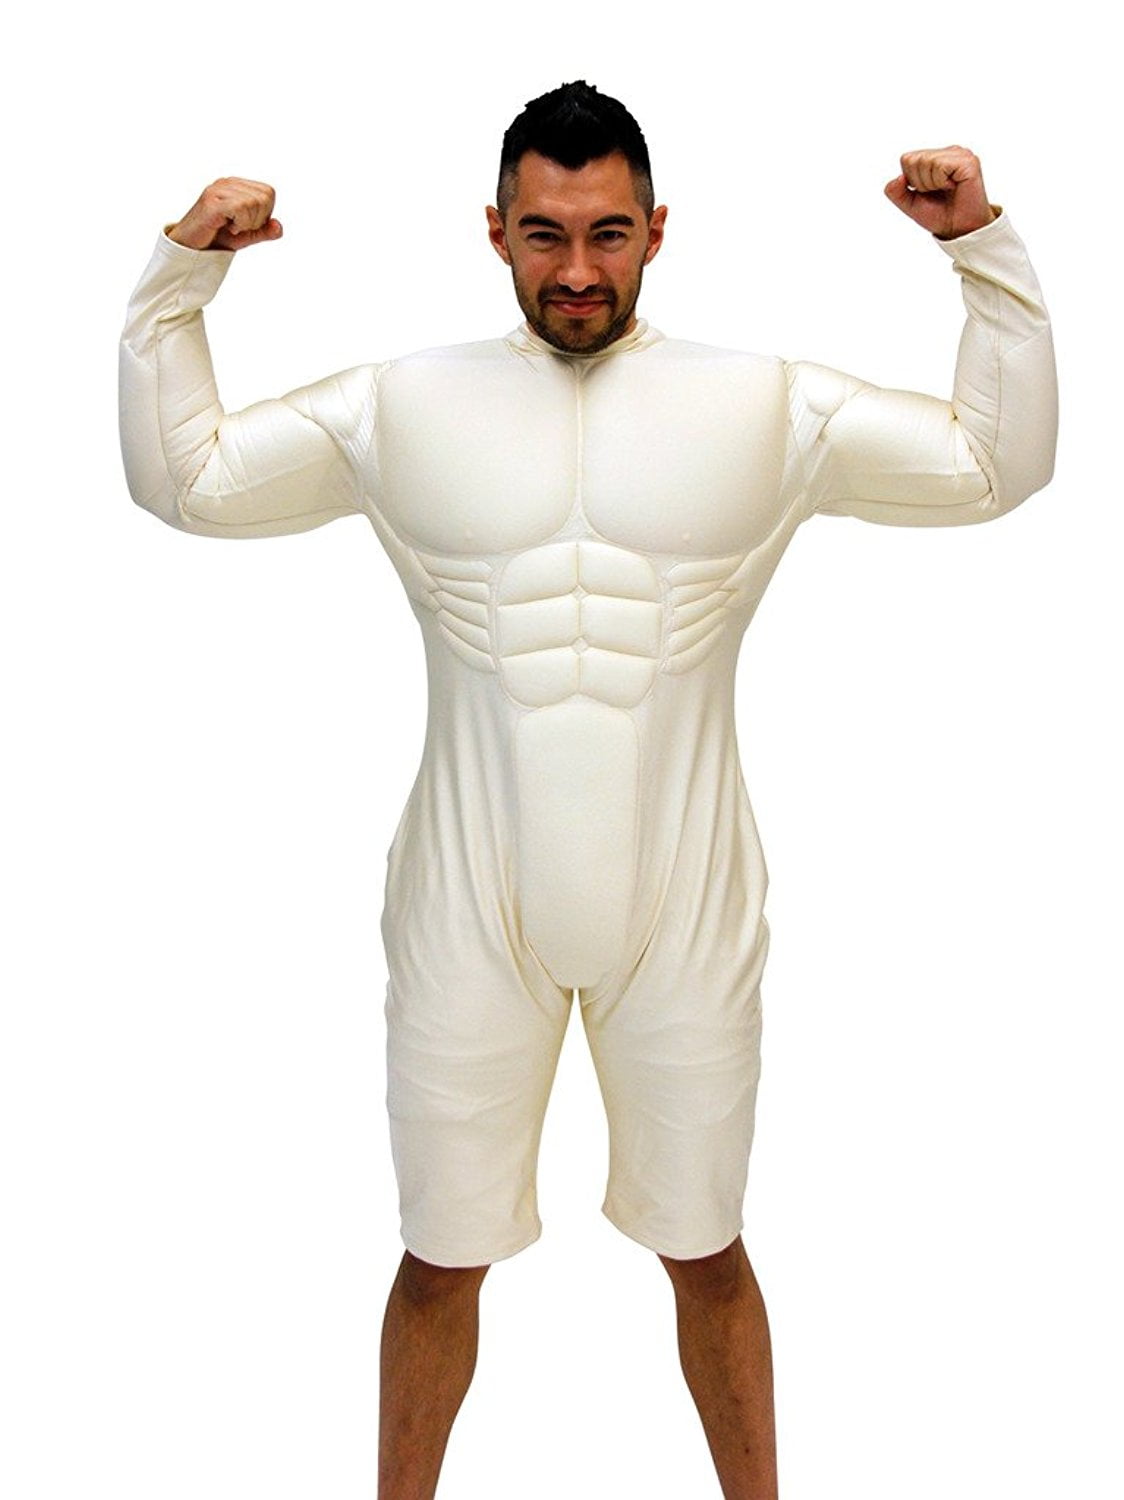 Men's Deluxe Muscle Suit Halloween Costume